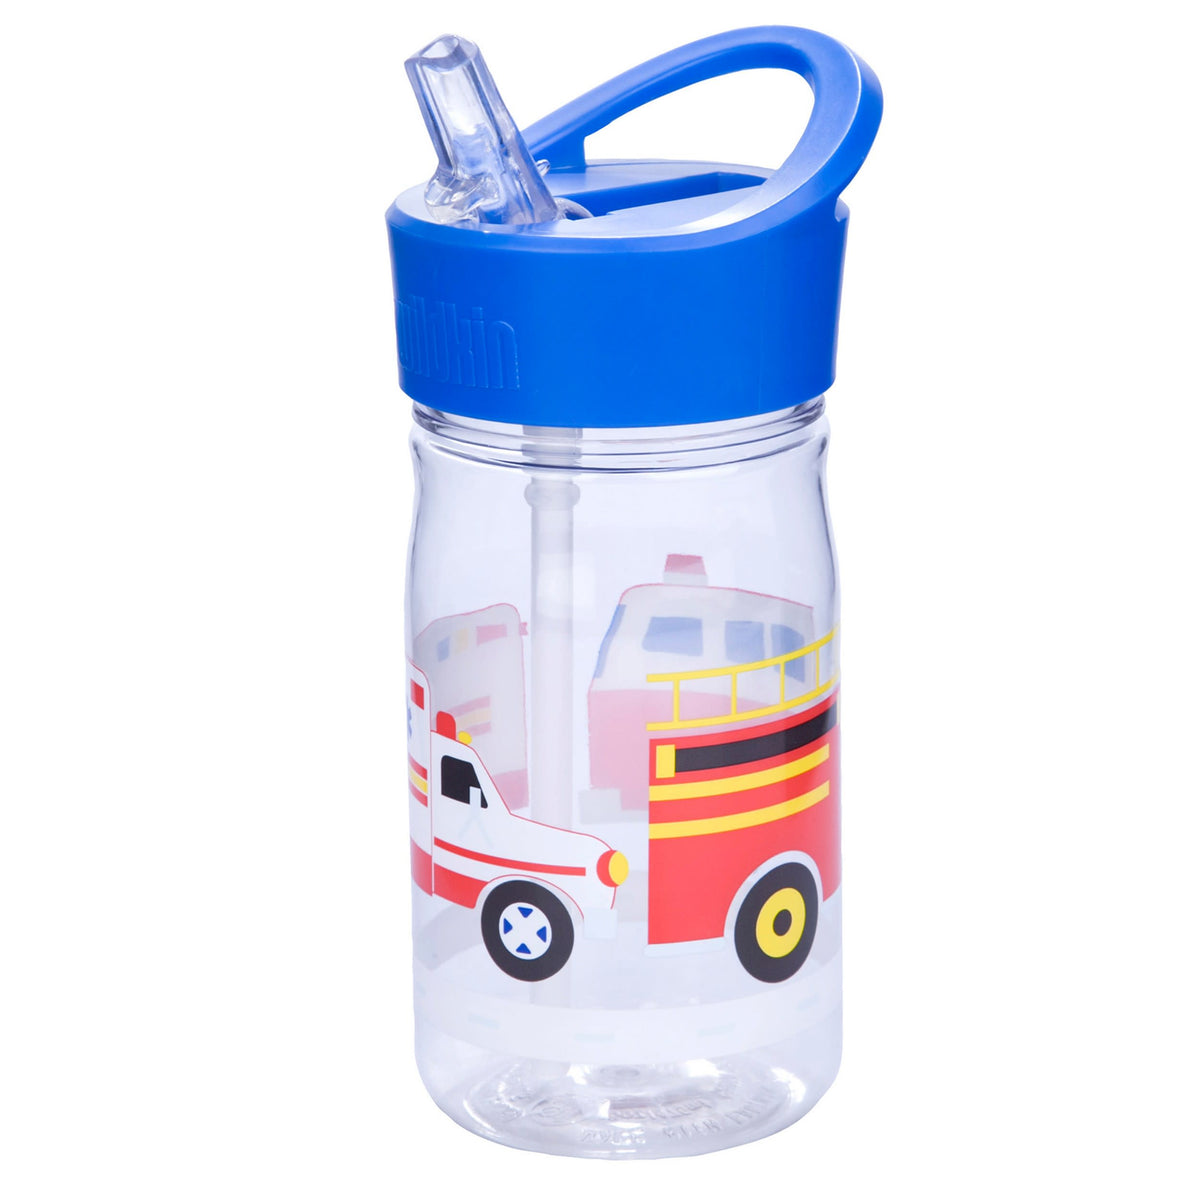 Wildkin Kids Reusable BPA-Free Tritan Plastic Water Bottle with Leak Proof  Lid for Boys & Girls, Dur…See more Wildkin Kids Reusable BPA-Free Tritan